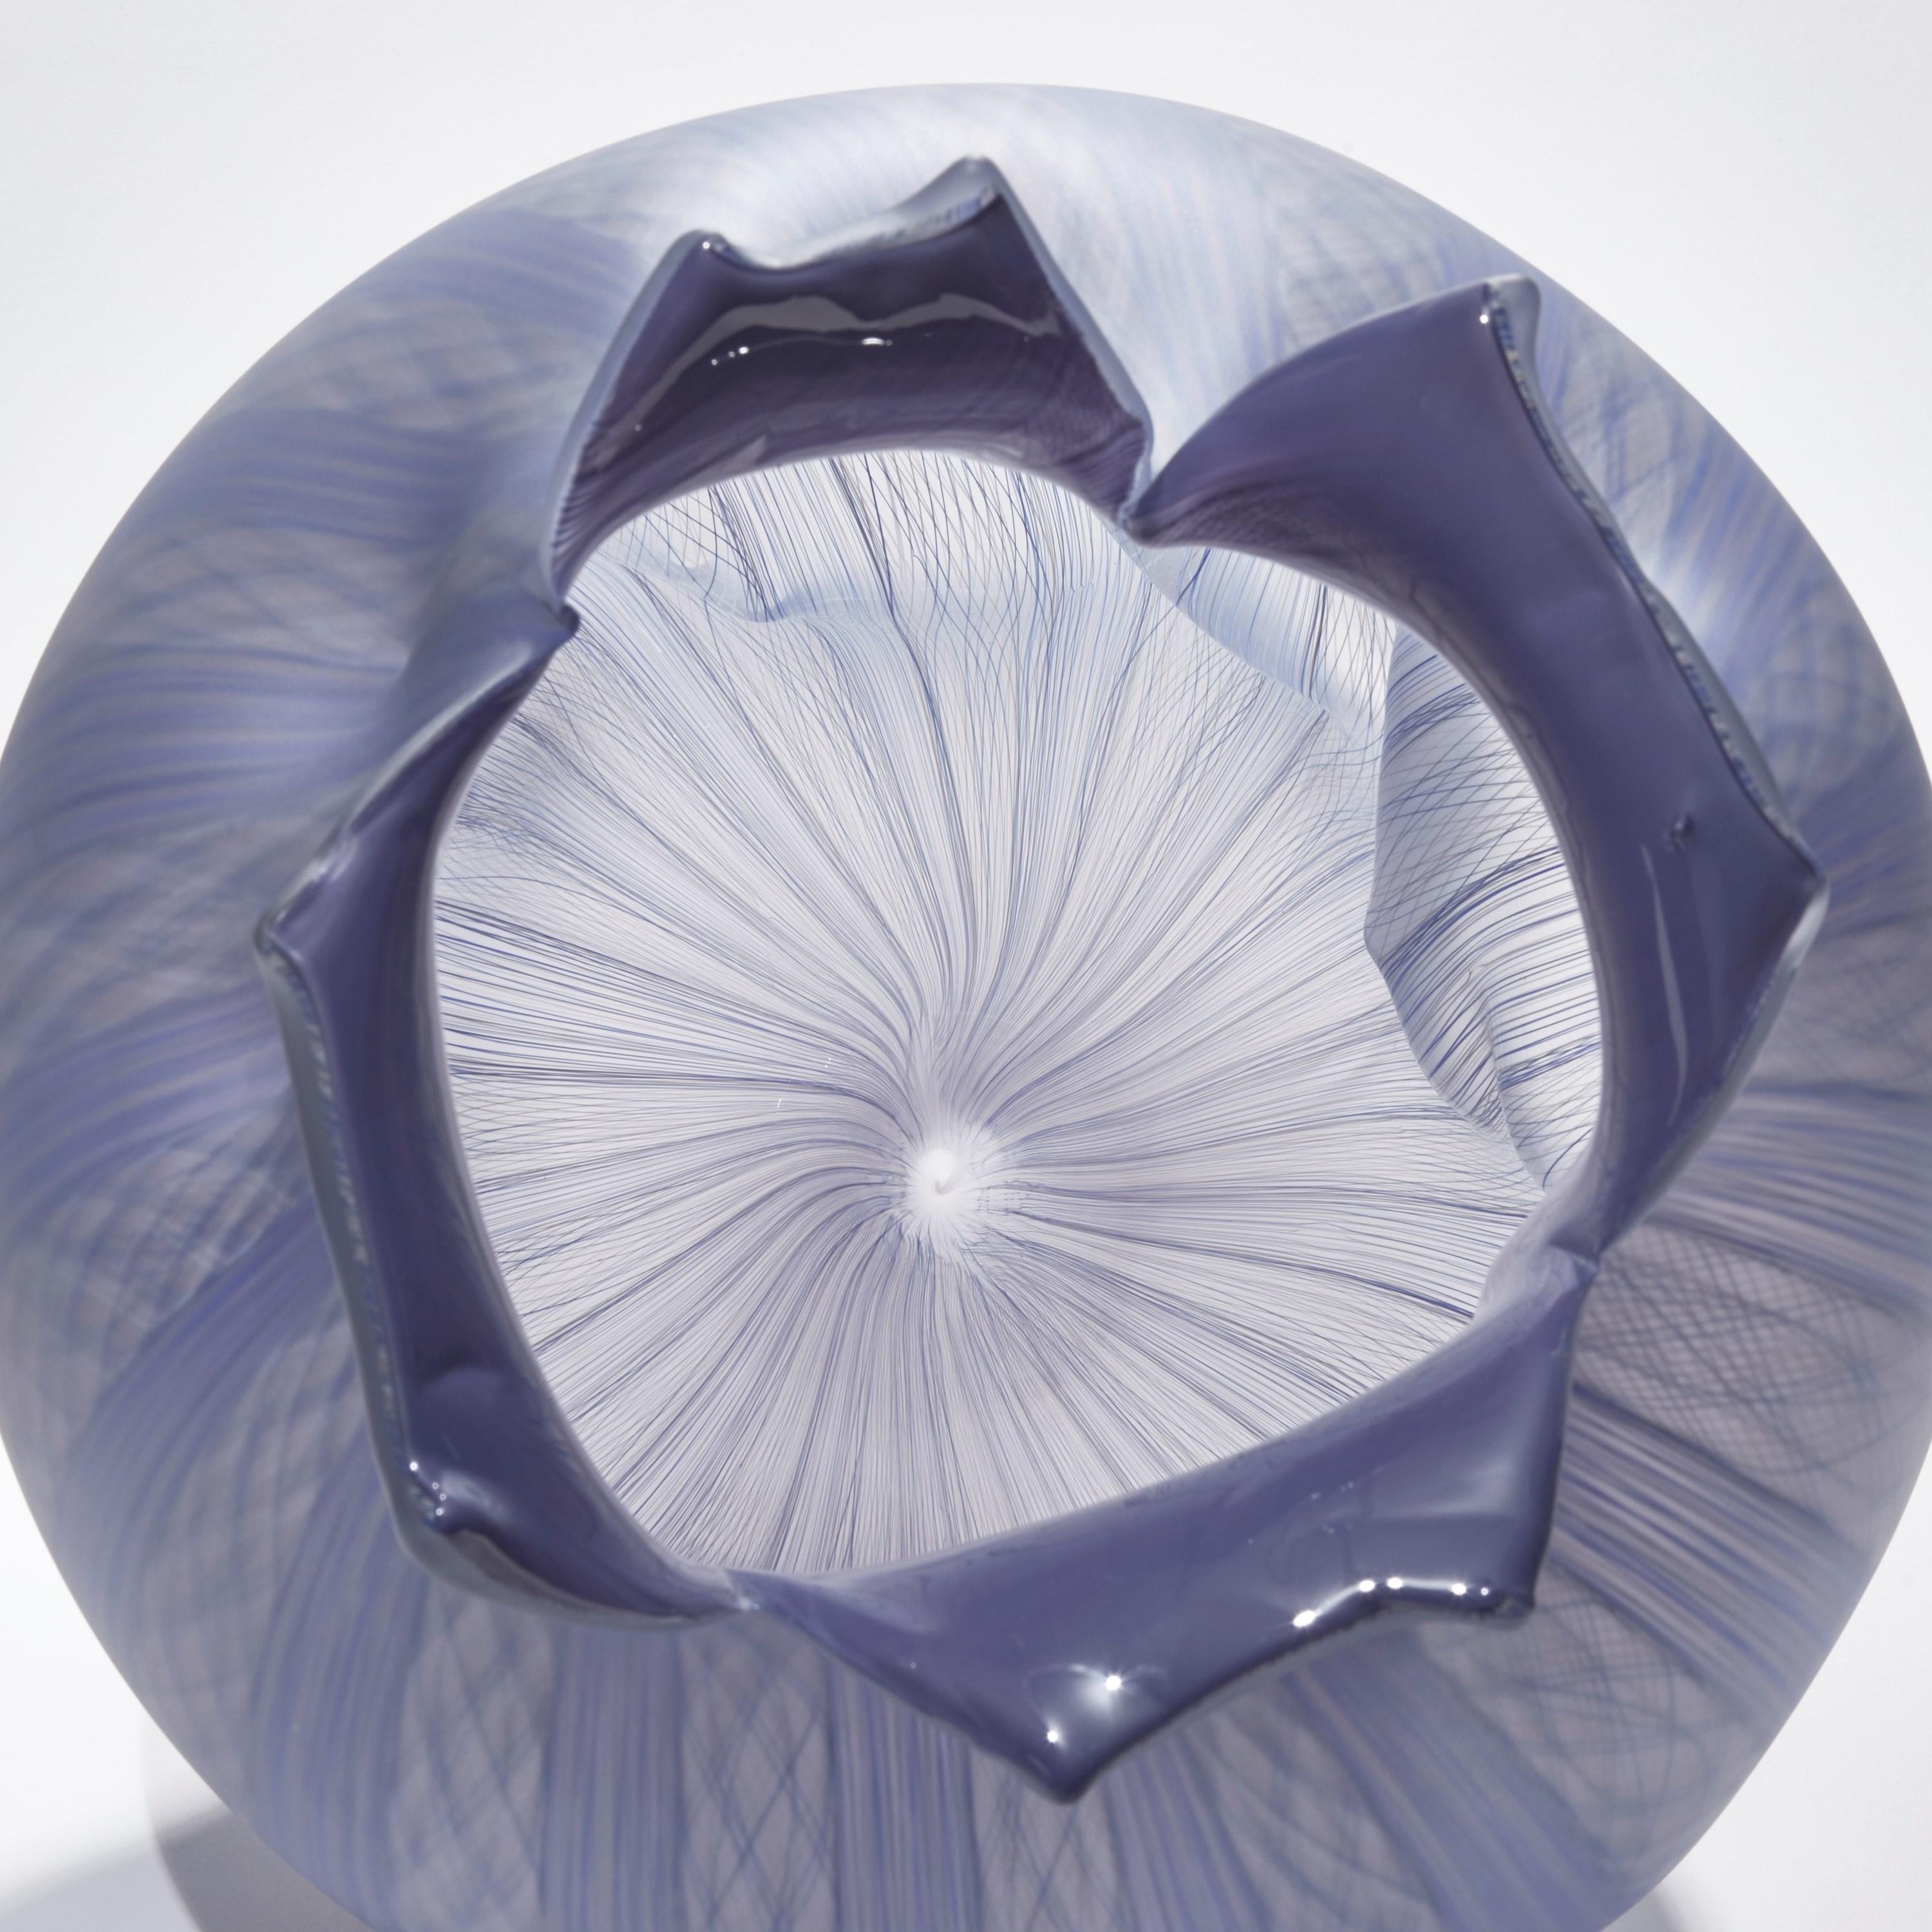 Organic Modern Filigree Spirit Fruit, a Lilac Glass Sculpture by Jeremy Maxwell Wintrebert